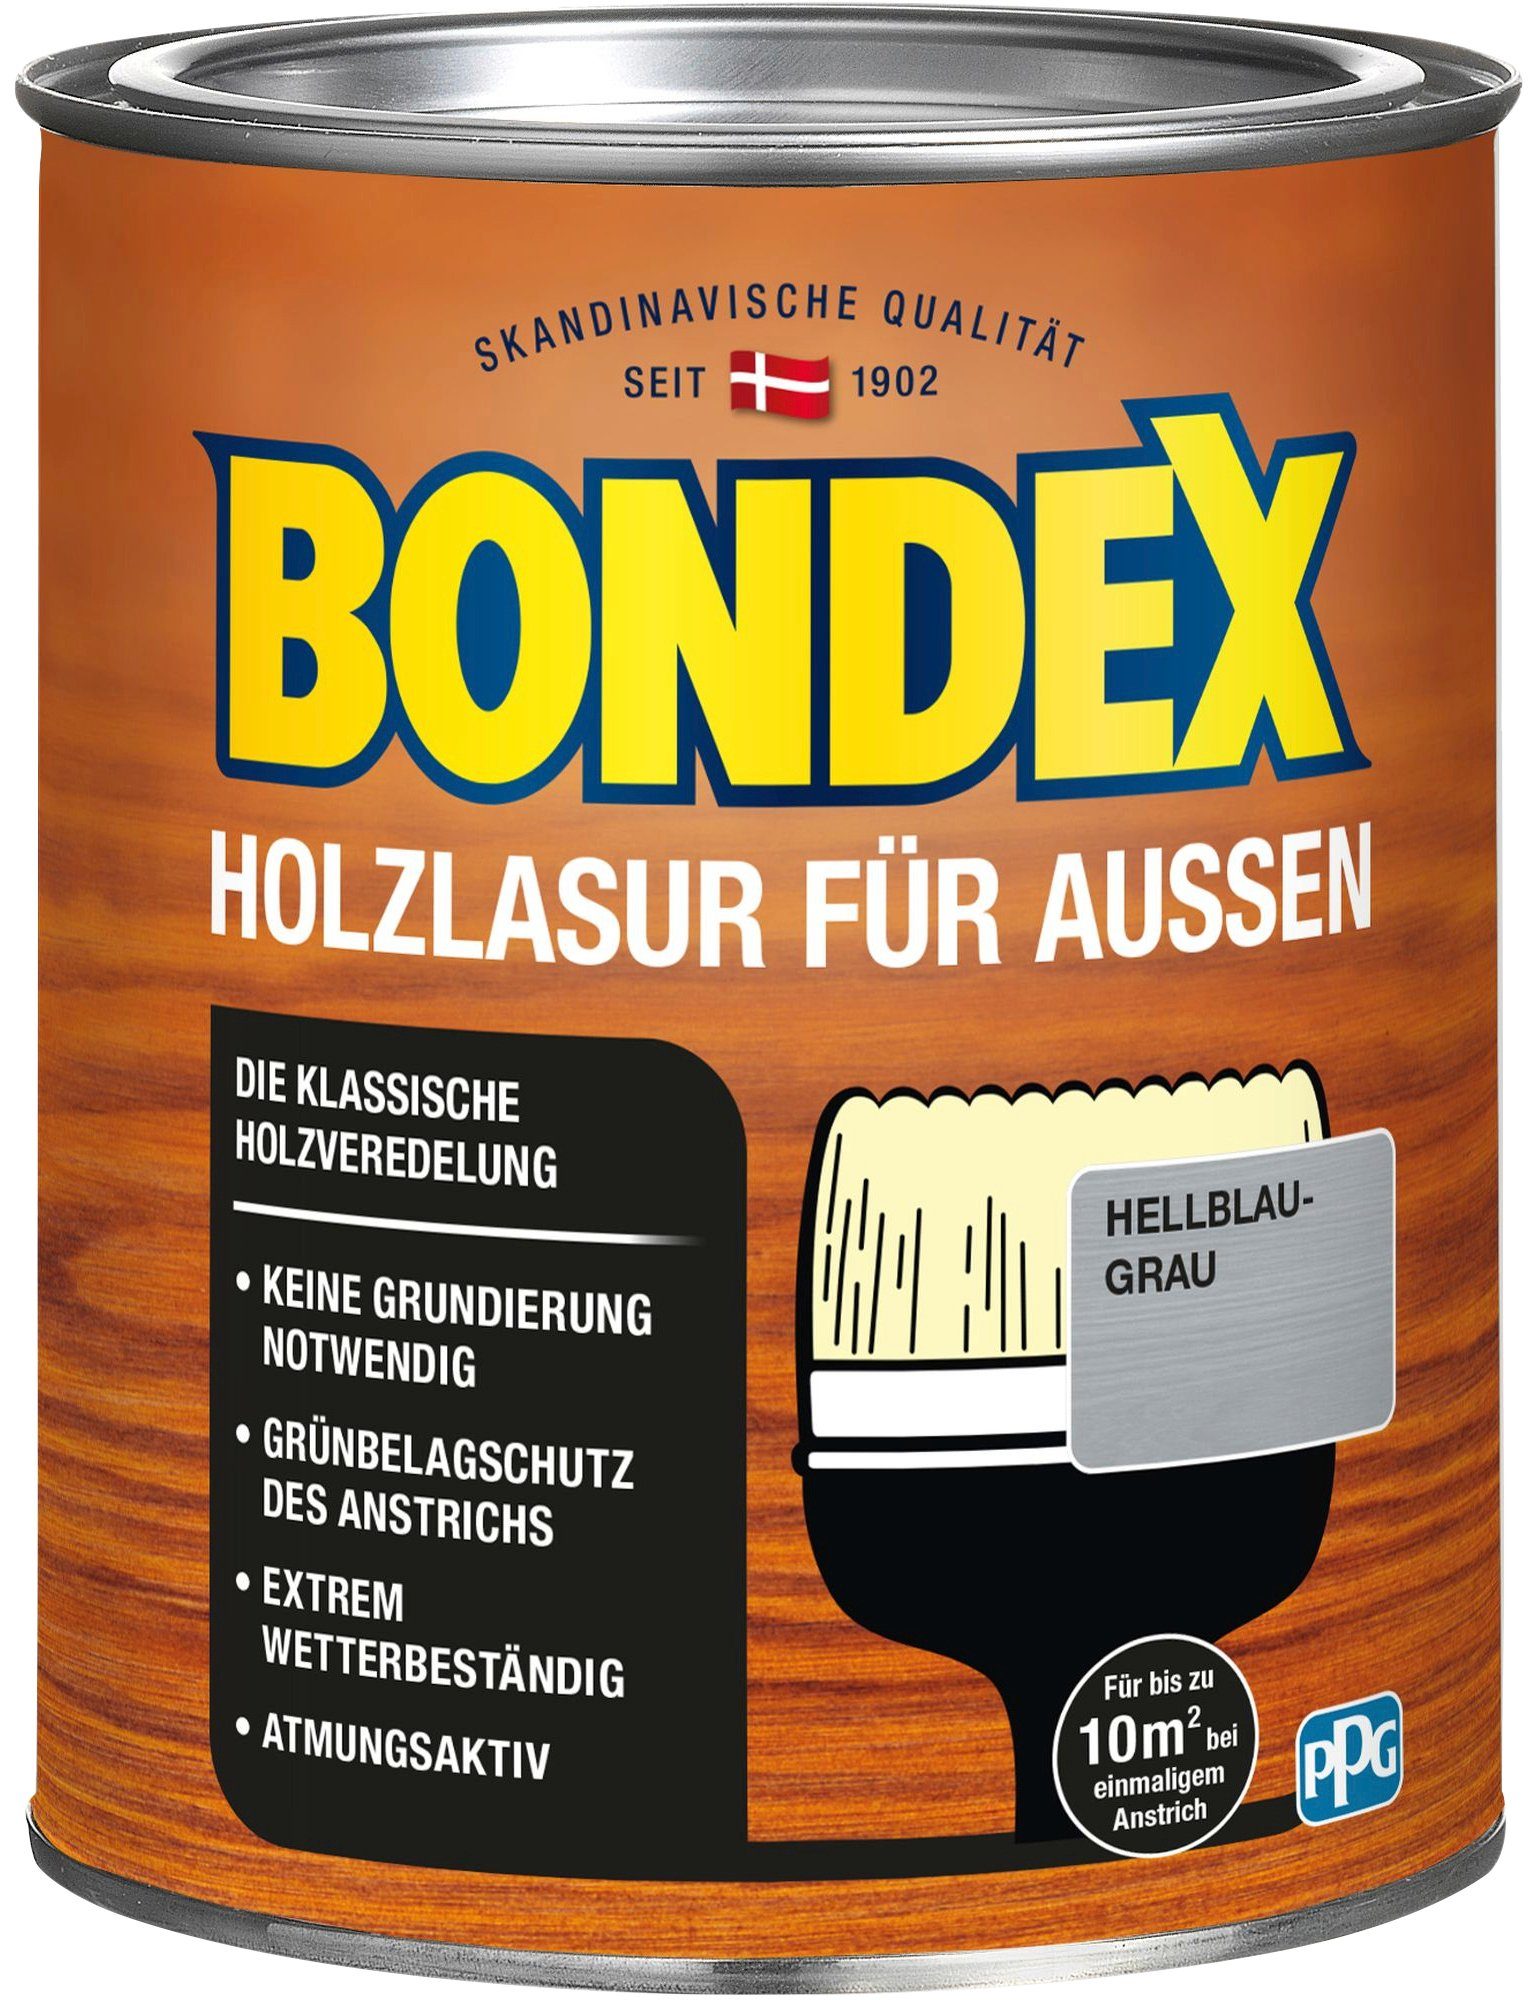 Bondex Holzschutzlasur Holzverkleidung, Wetterschutz Hellblau-Grau in versch. Farbtönen HOLZLASUR FÜR atmungsaktiv, AUSSEN